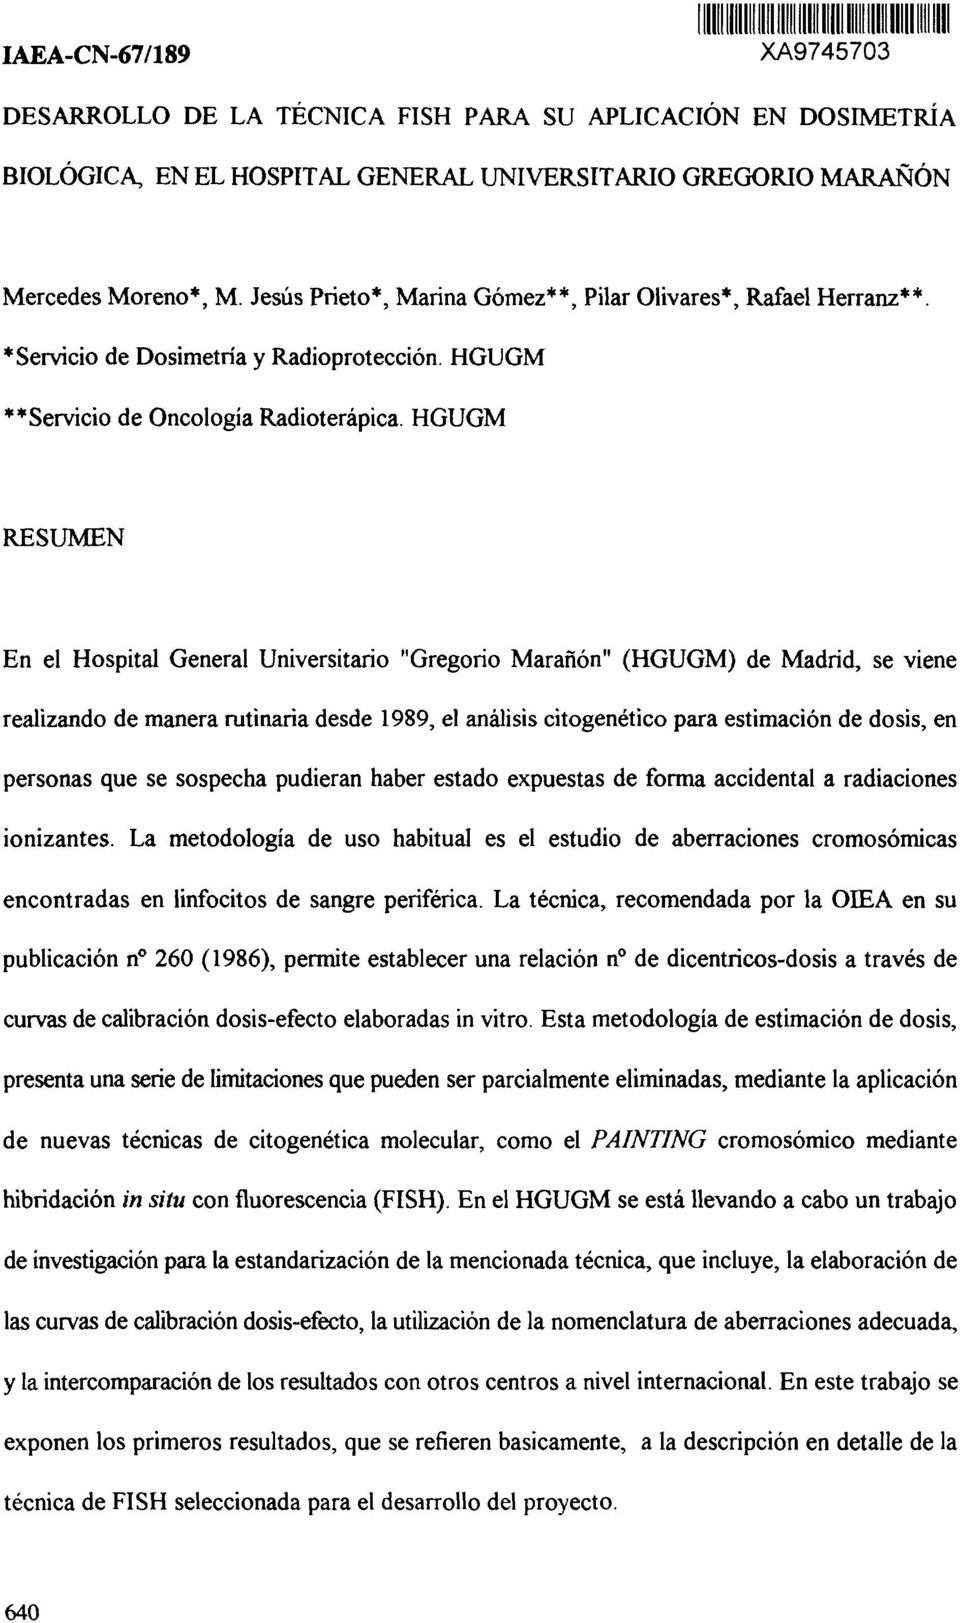 HGUGM RESUMEN En el Hospital General Universitario "Gregorio Marañón" (HGUGM) de Madrid, se viene realizando de manera rutinaria desde 1989, el análisis citogenético para estimación de dosis, en